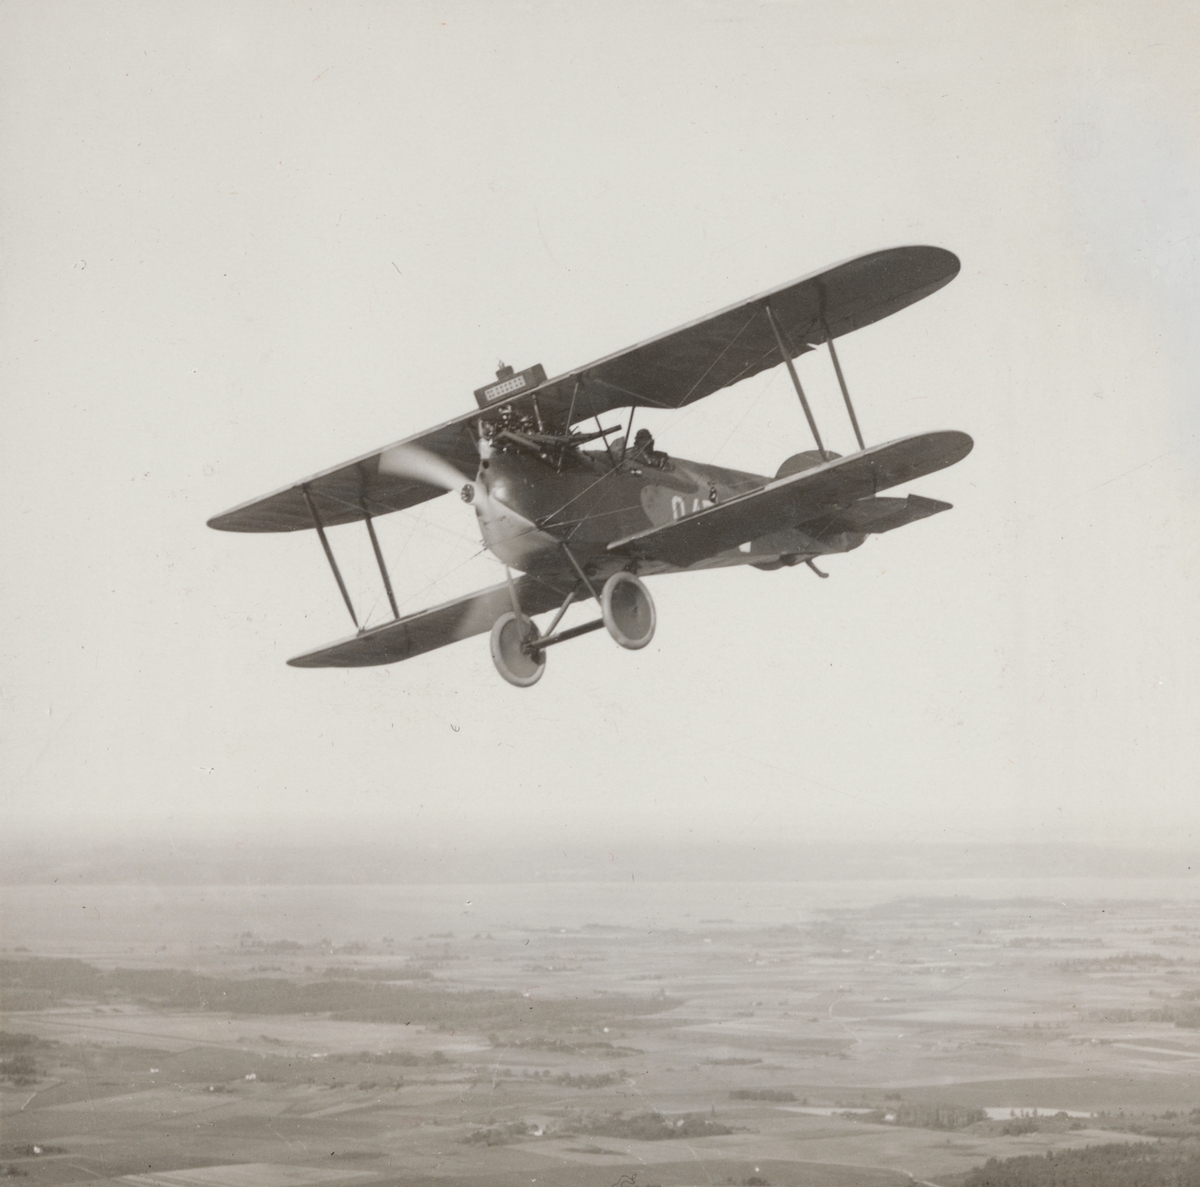 Flygplan Phönix D.II Phönixjagaren märkt nummer 949 flyger över landskap, 1925. Flygbild med sjön Roxen i bakgrunden.

Text vid foto: "Phönixjagare. 185 HK. B.M.W. eller 200 HK Hiero. Över Roxen. 1925."